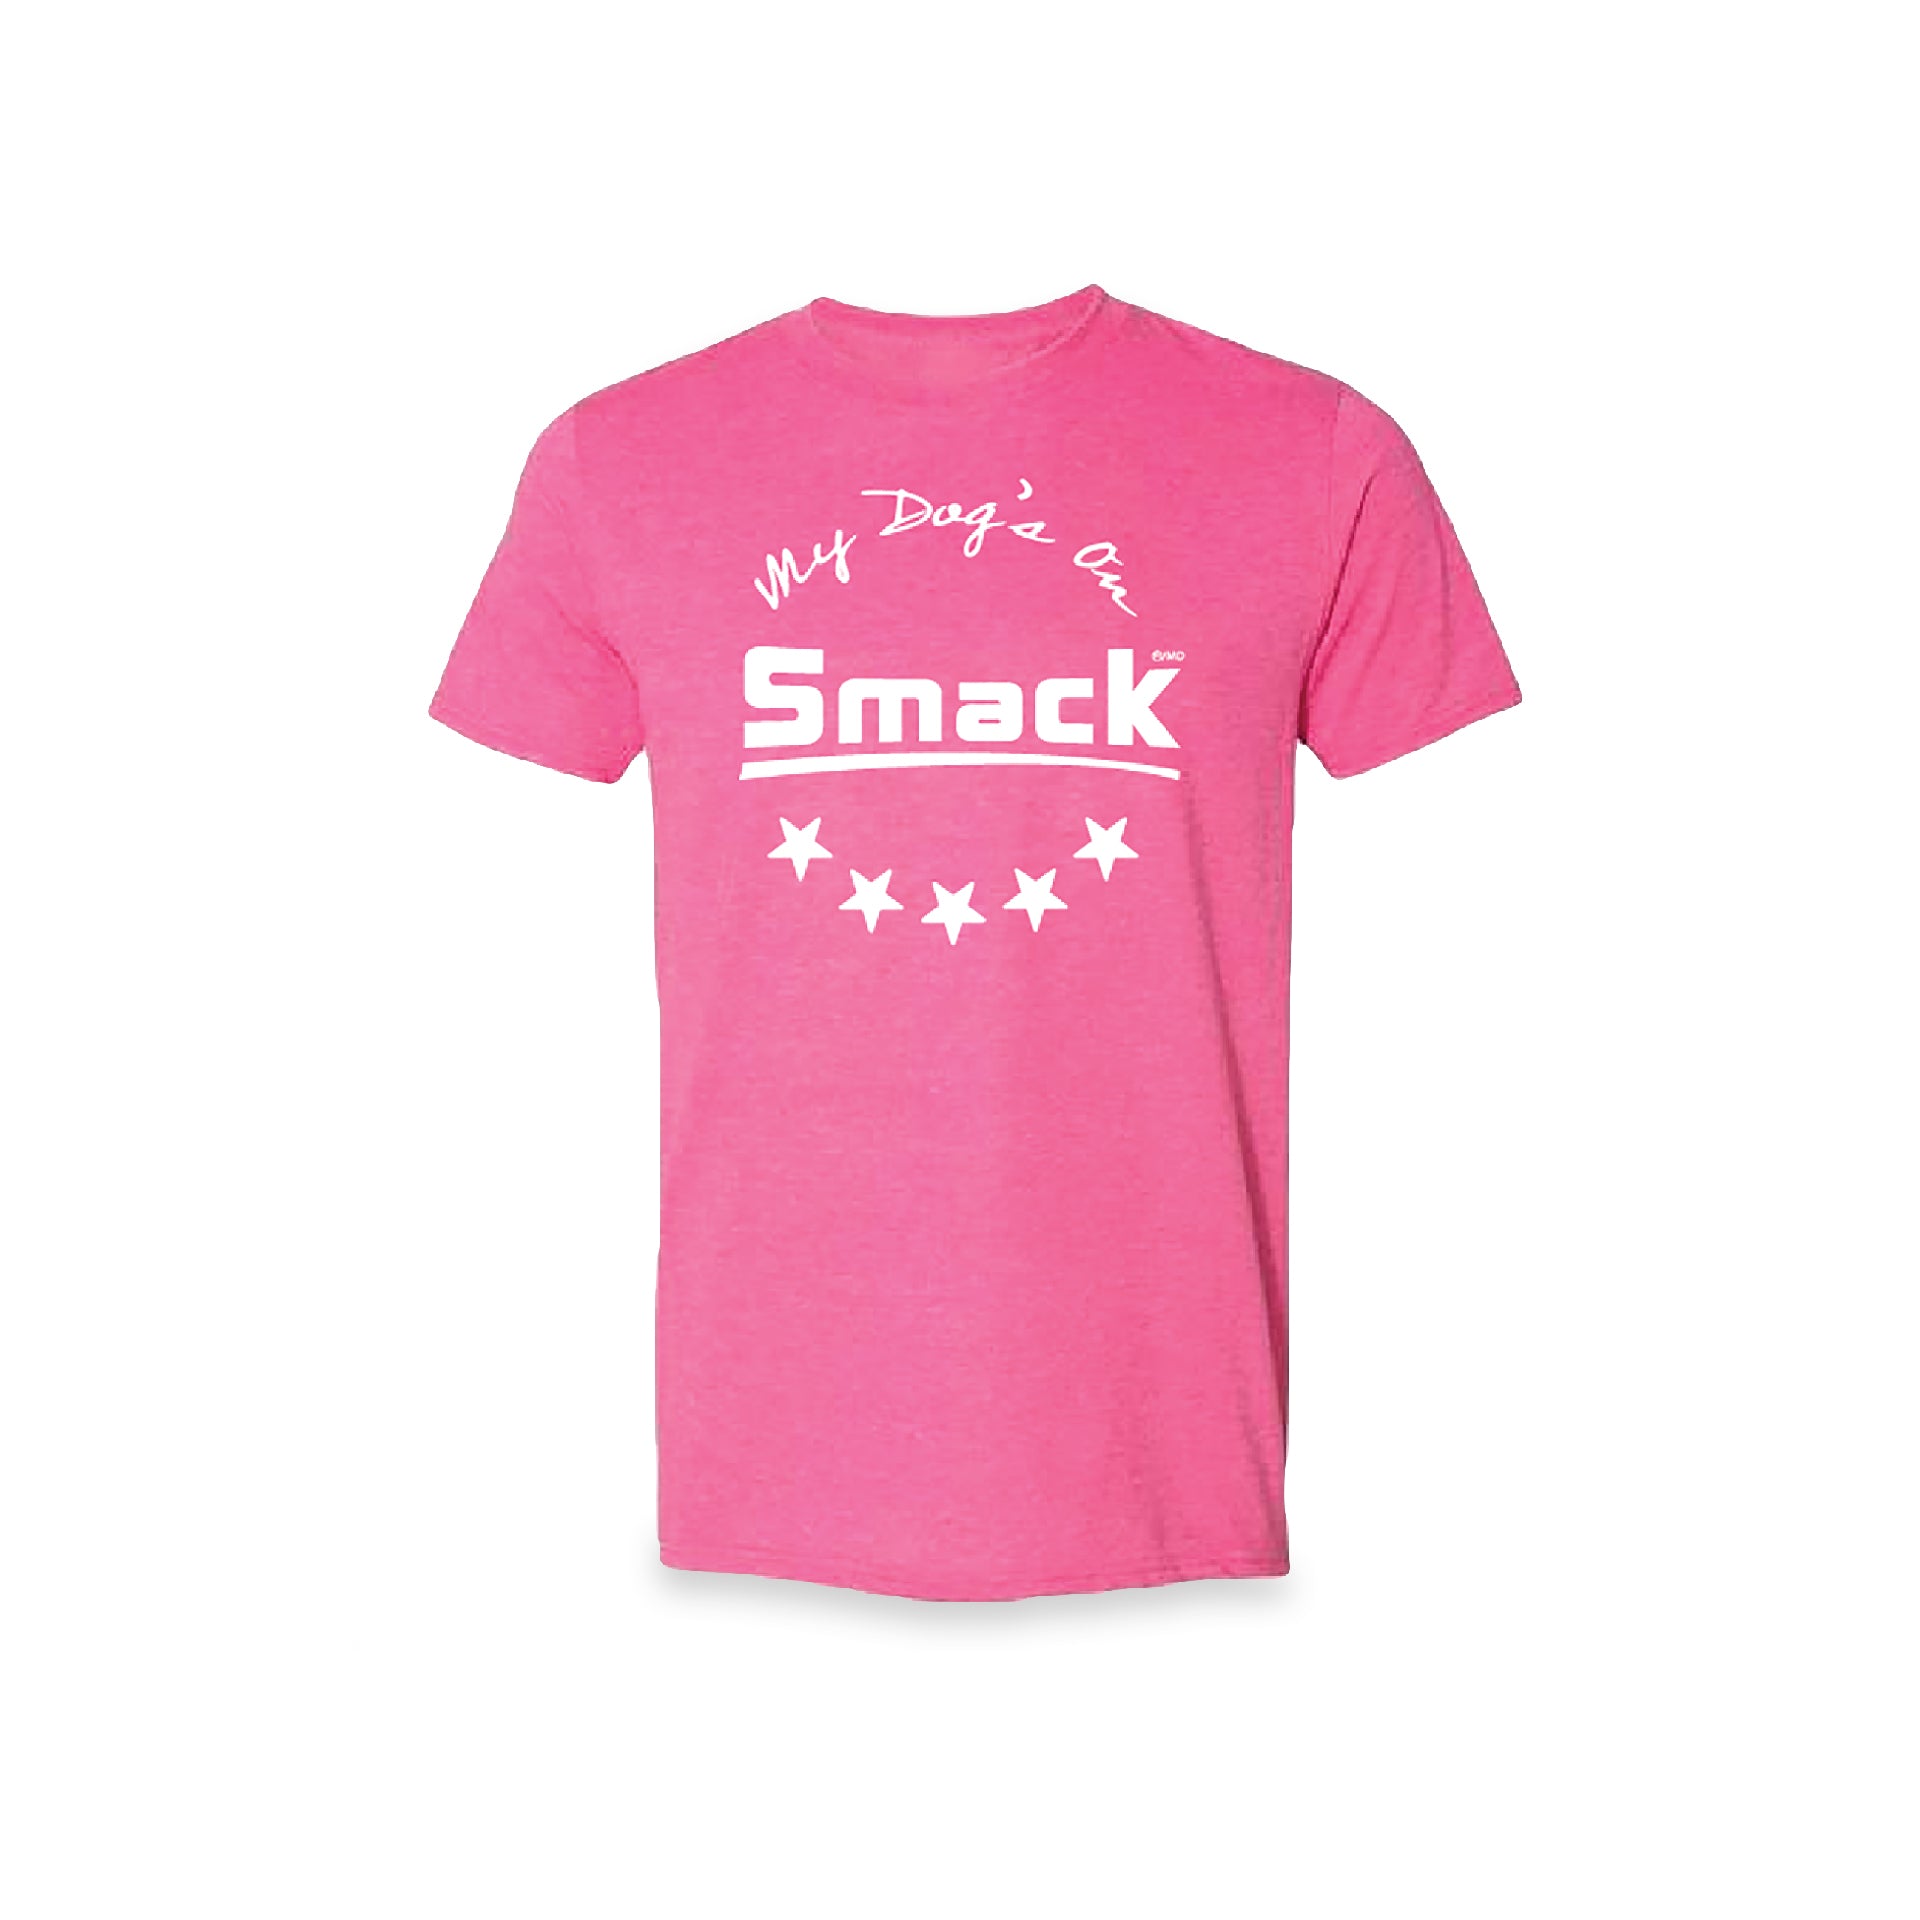 Smack Pet Food Inc.